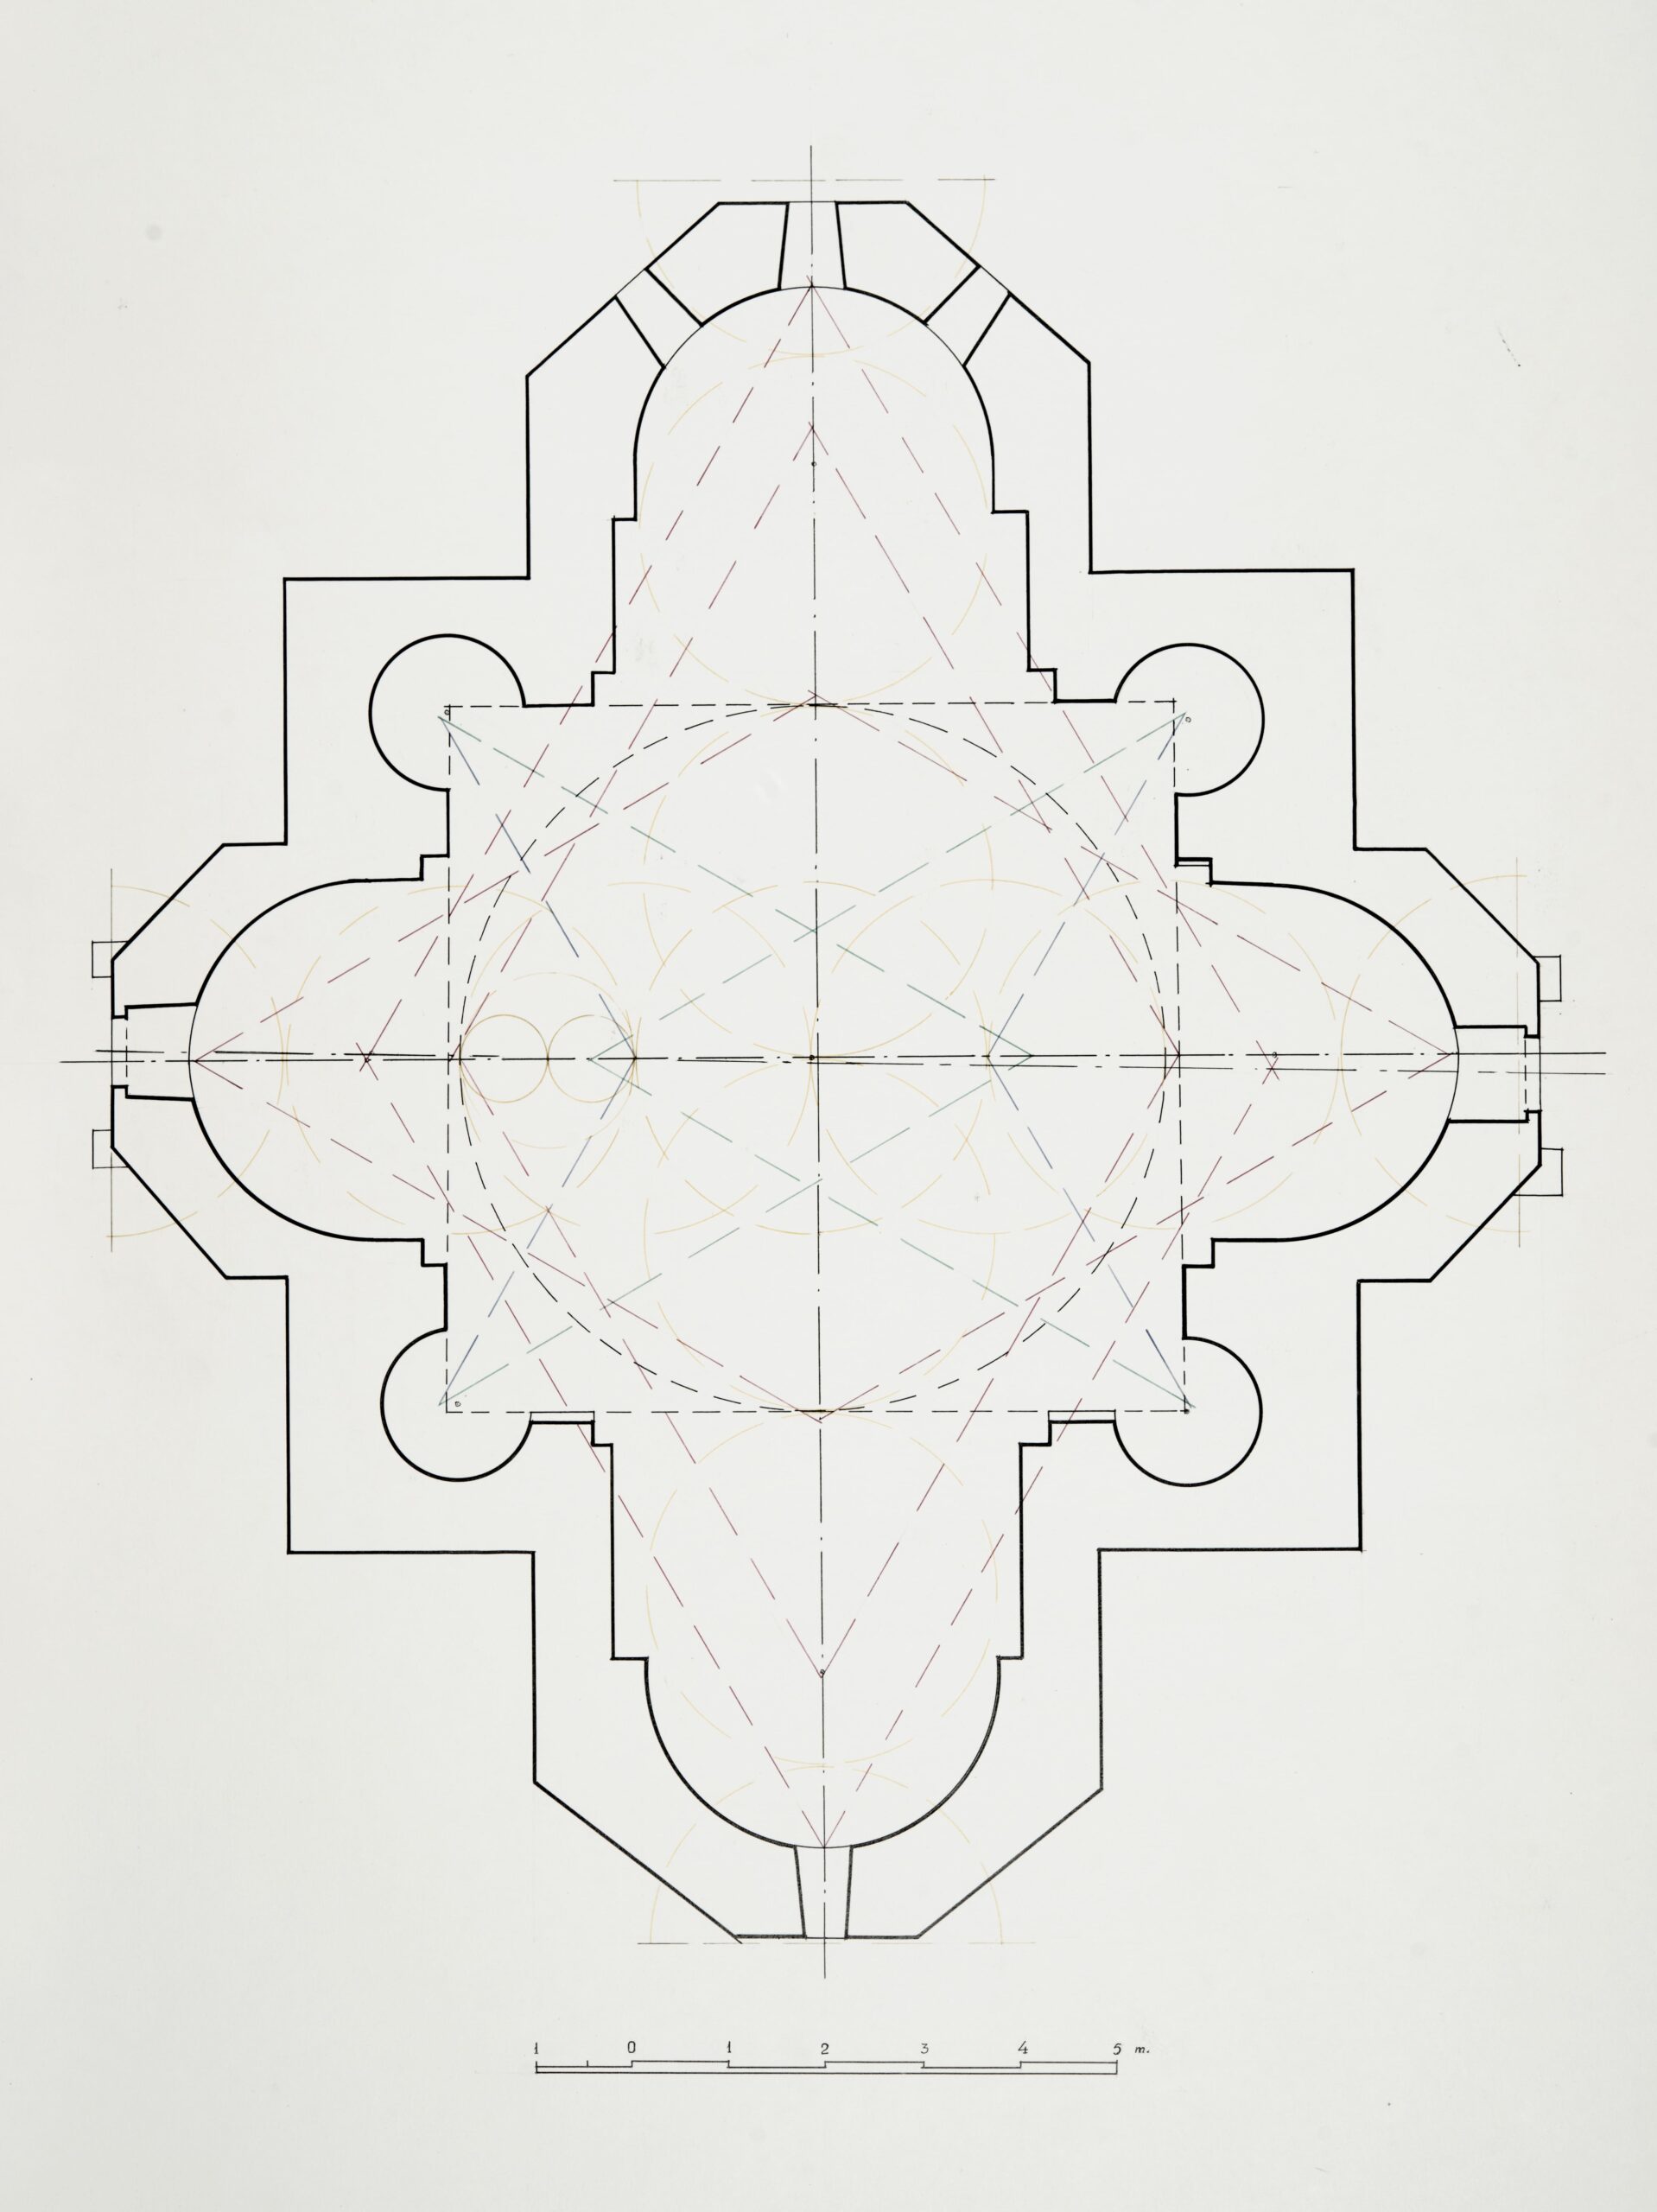 Տաճարի ներքին մասերի փոխադարձ հարաբերությունները պատկերող գծագիր